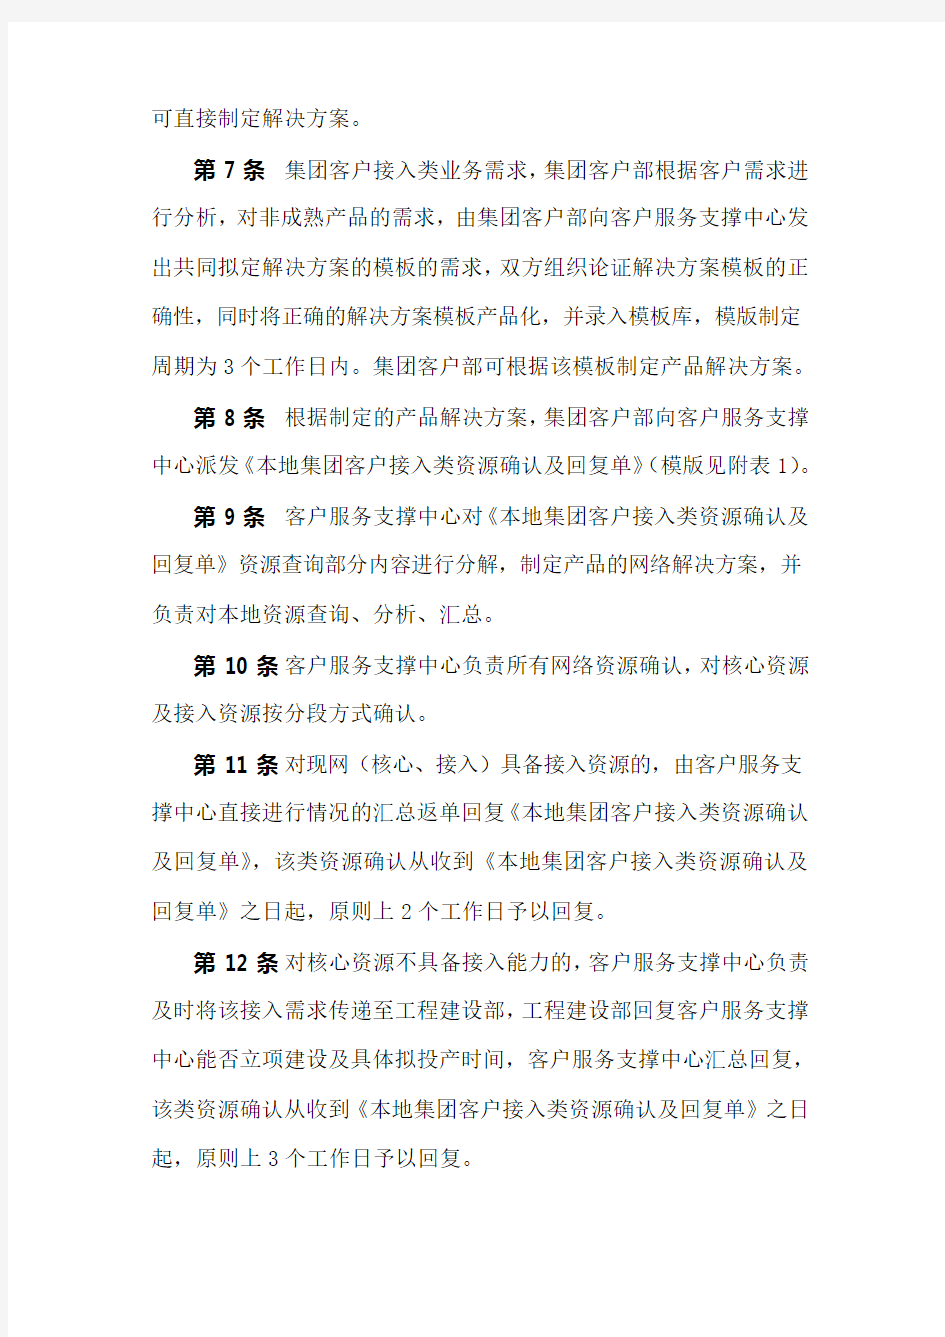 中国移动通信集团安徽有限公司集团客户接入类业务服务保障工作流程